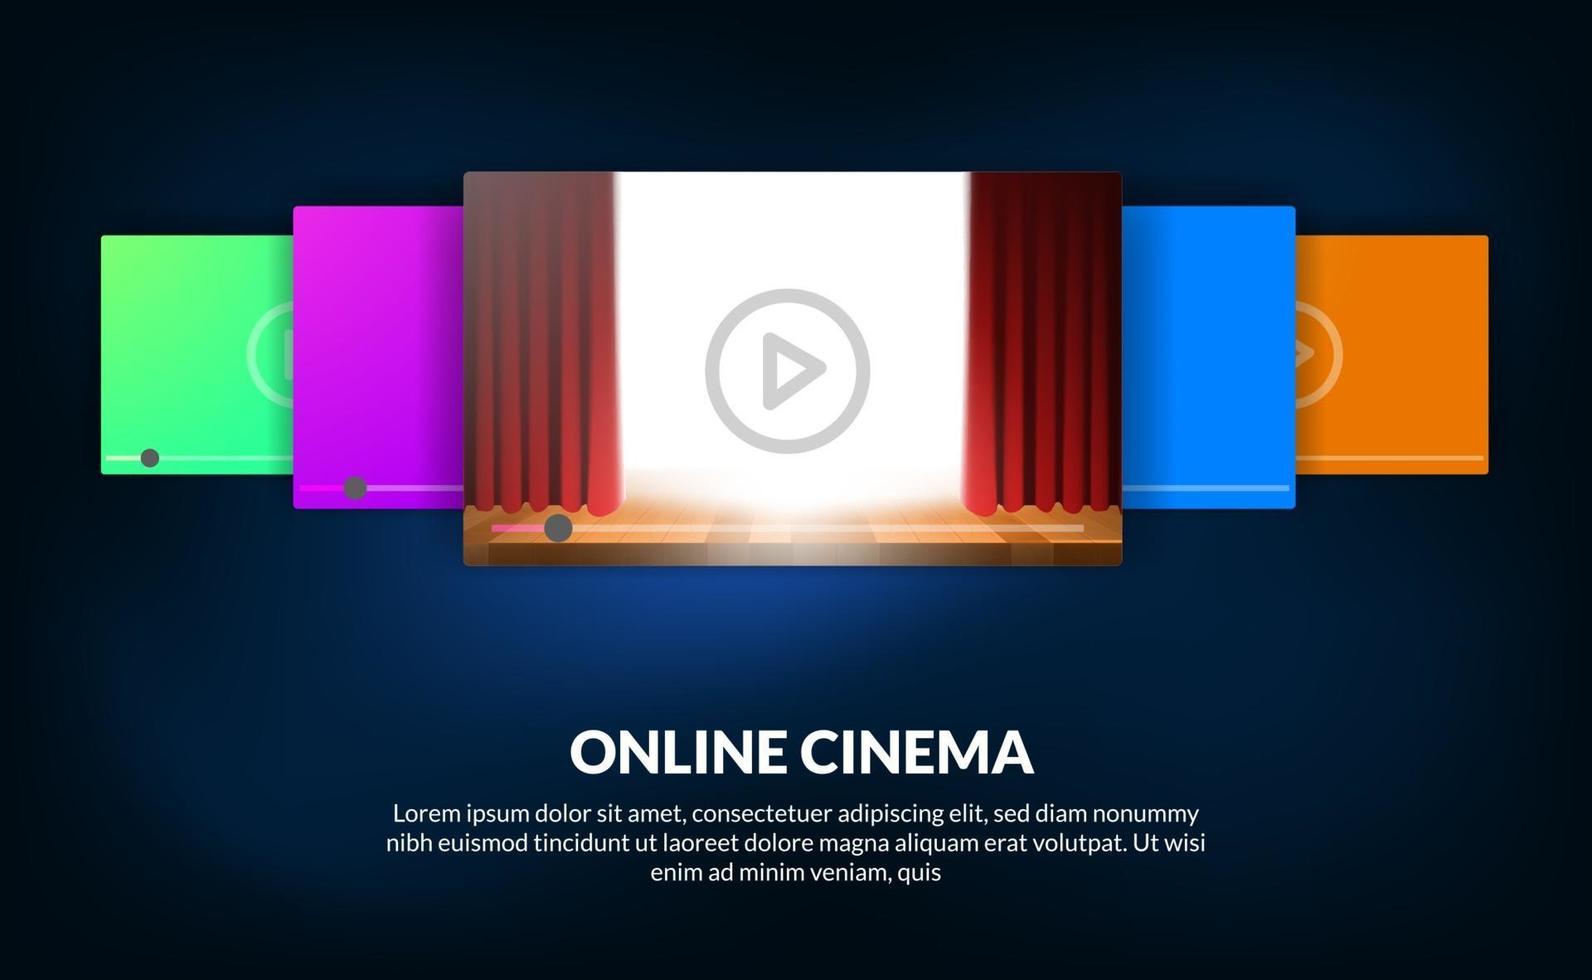 Carrusel de películas para el concepto de cine de video en línea con espectáculo de escenario de cortina roja para vista previa de la película vector